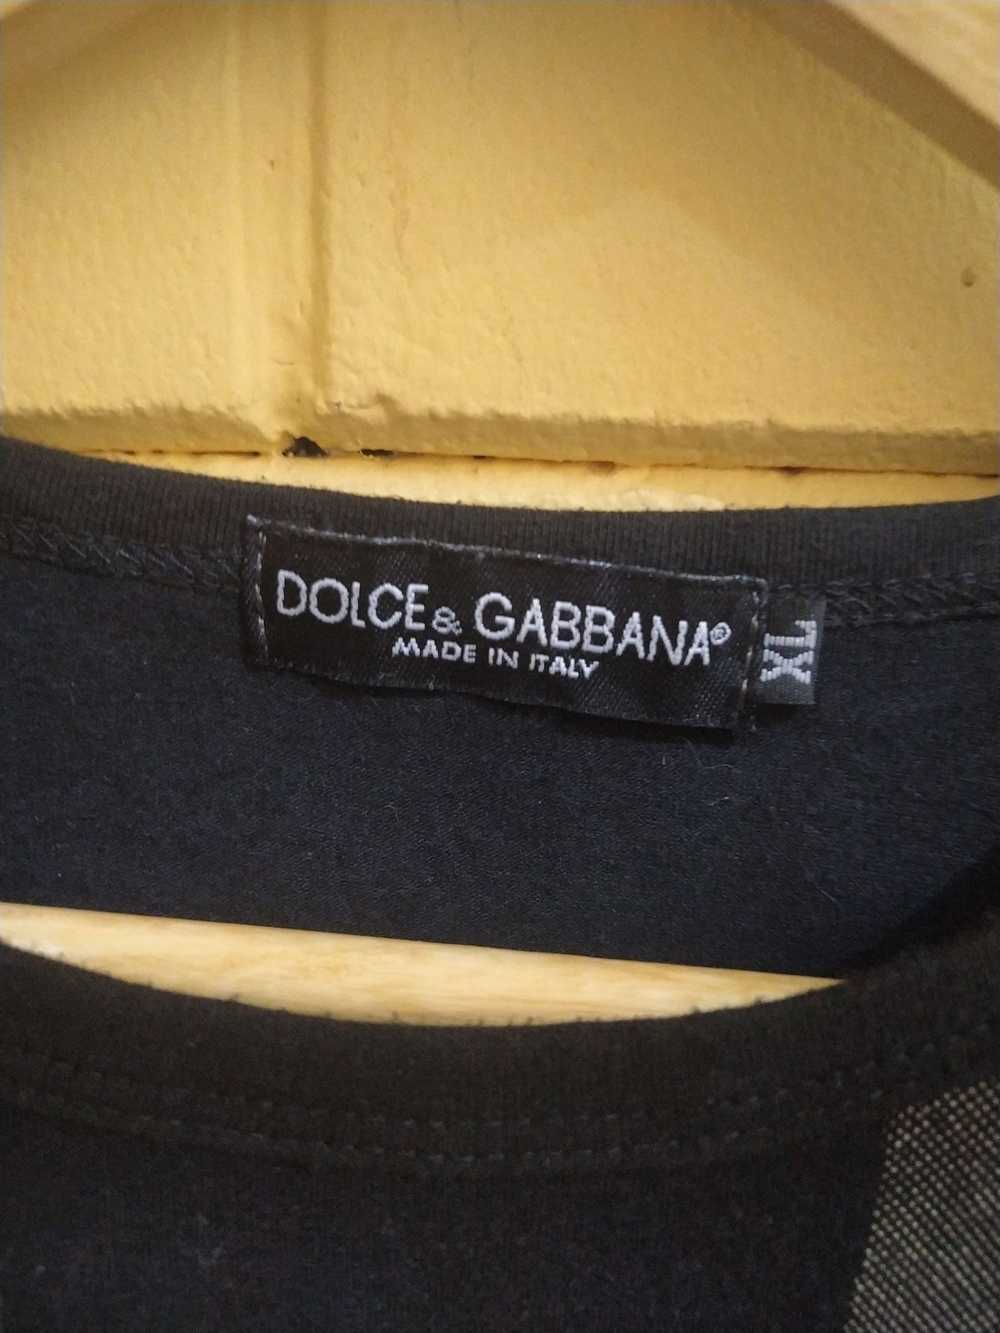 Dolce & Gabbana × Italian Designers Dolce gabbana - image 2